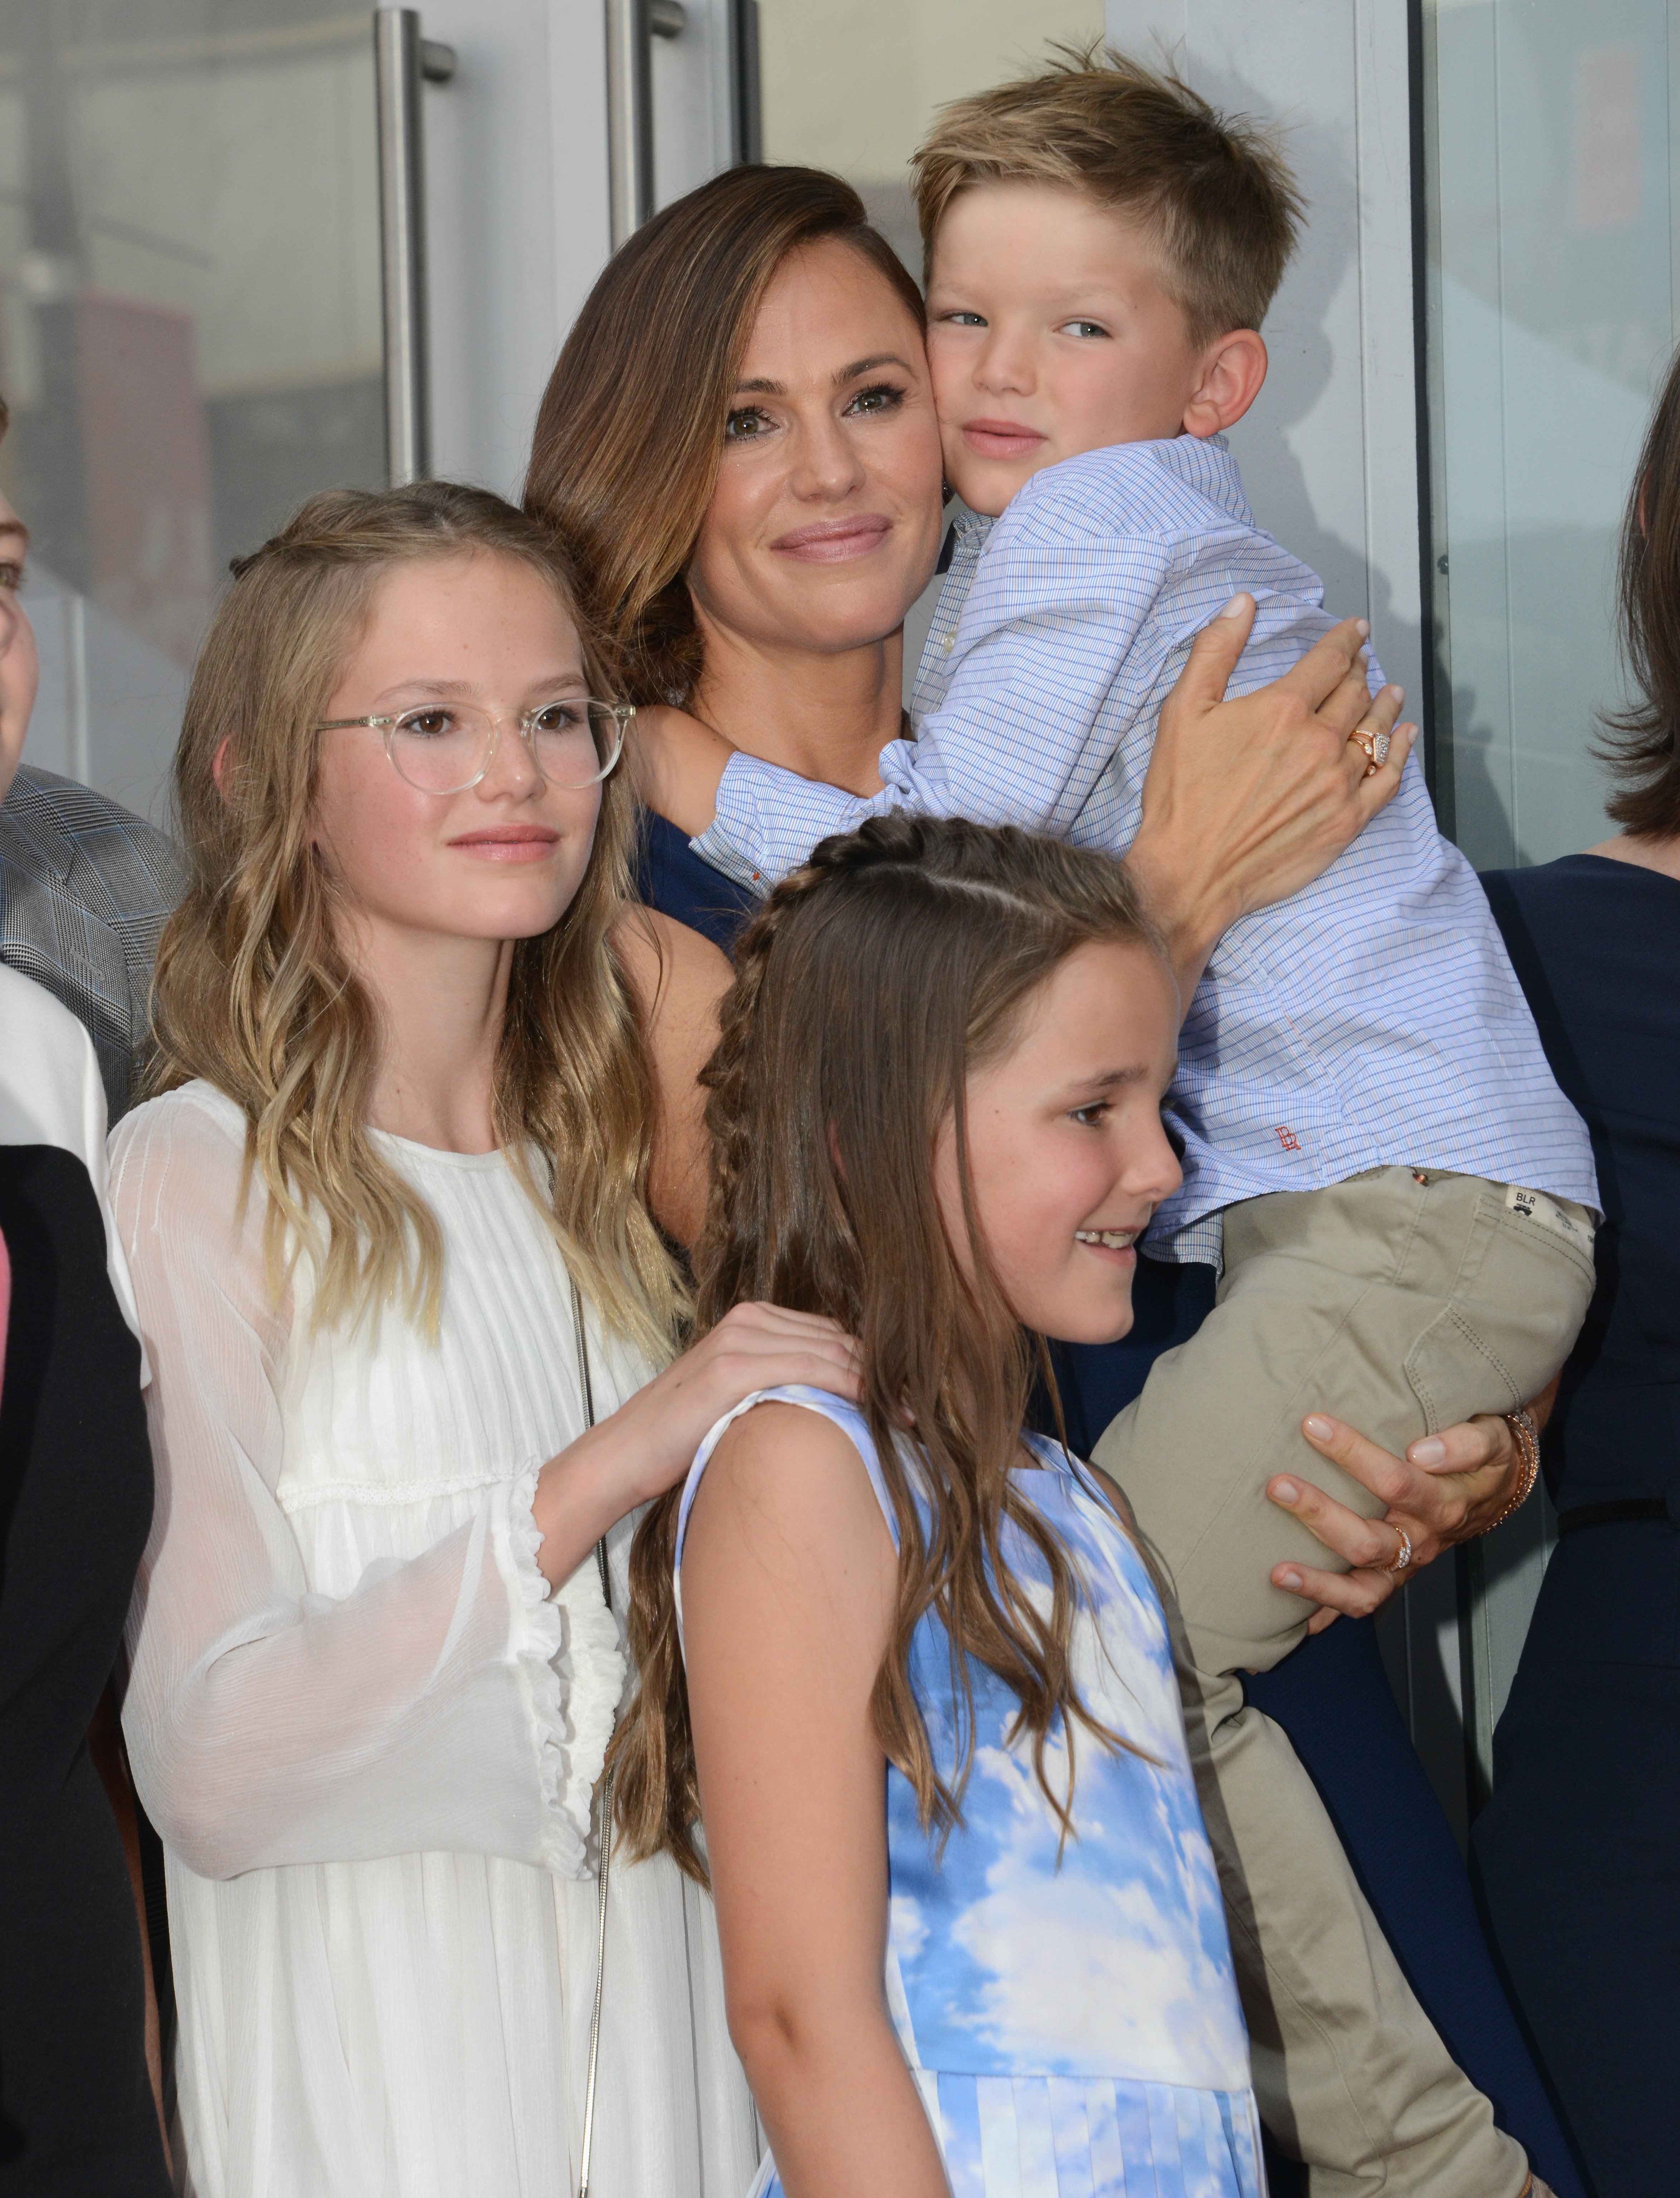 Jennifer Garner con sus hijos Violet, Samuel y Seraphina Affleck durante la ceremonia en honor a Jennifer Garner con una estrella en el Paseo de la Fama de Hollywood el 20 de agosto de 2018 en Hollywood, California. | Foto: Getty Images